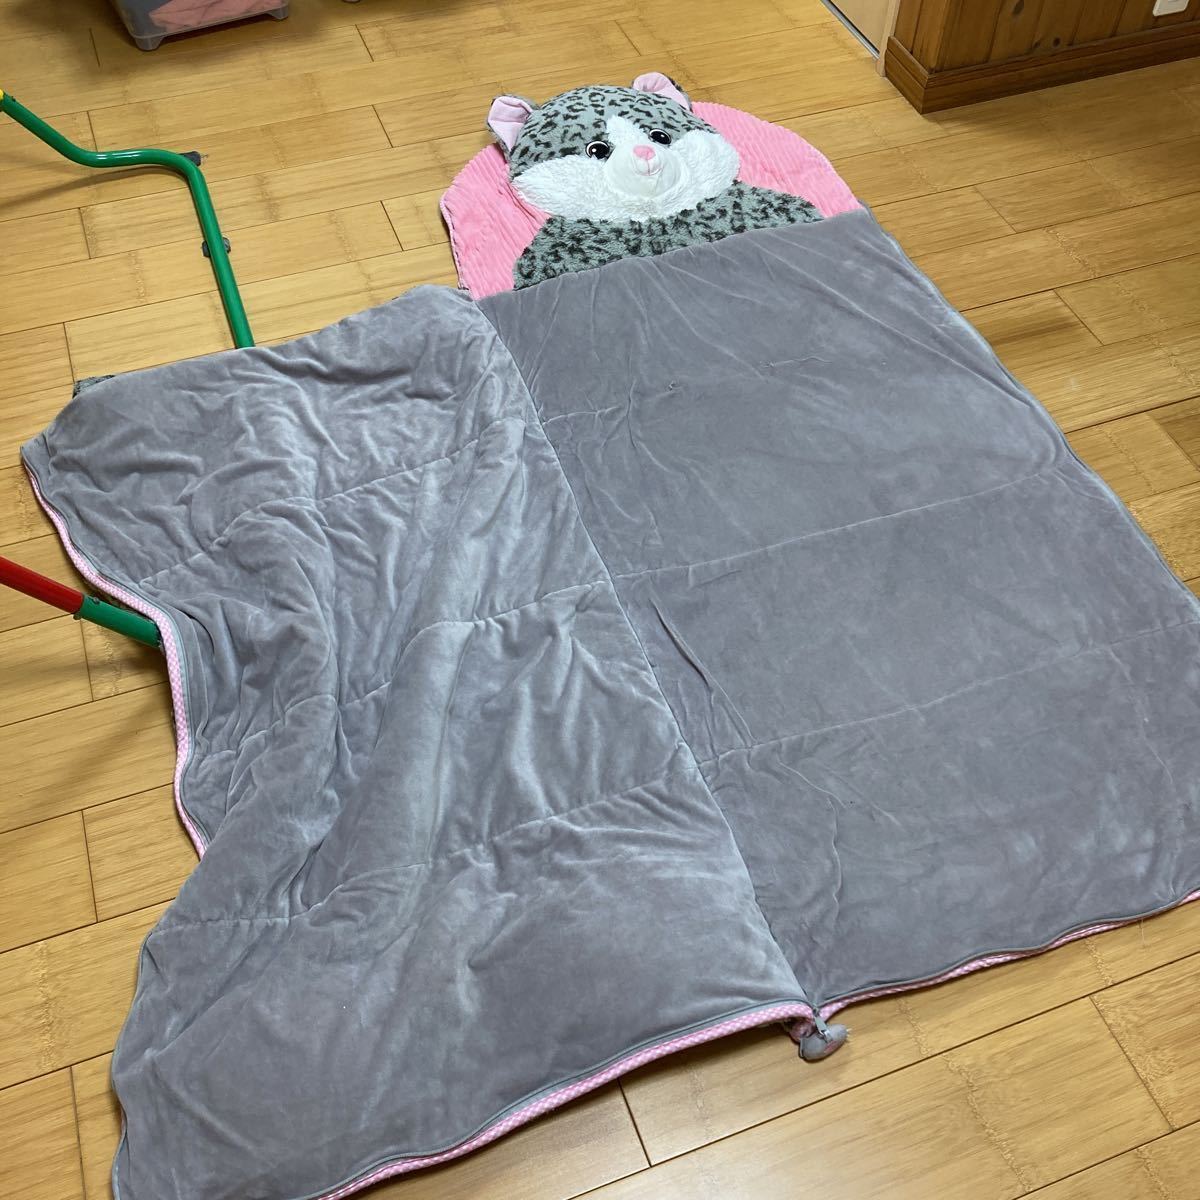  Kids sleeping bag blanket 